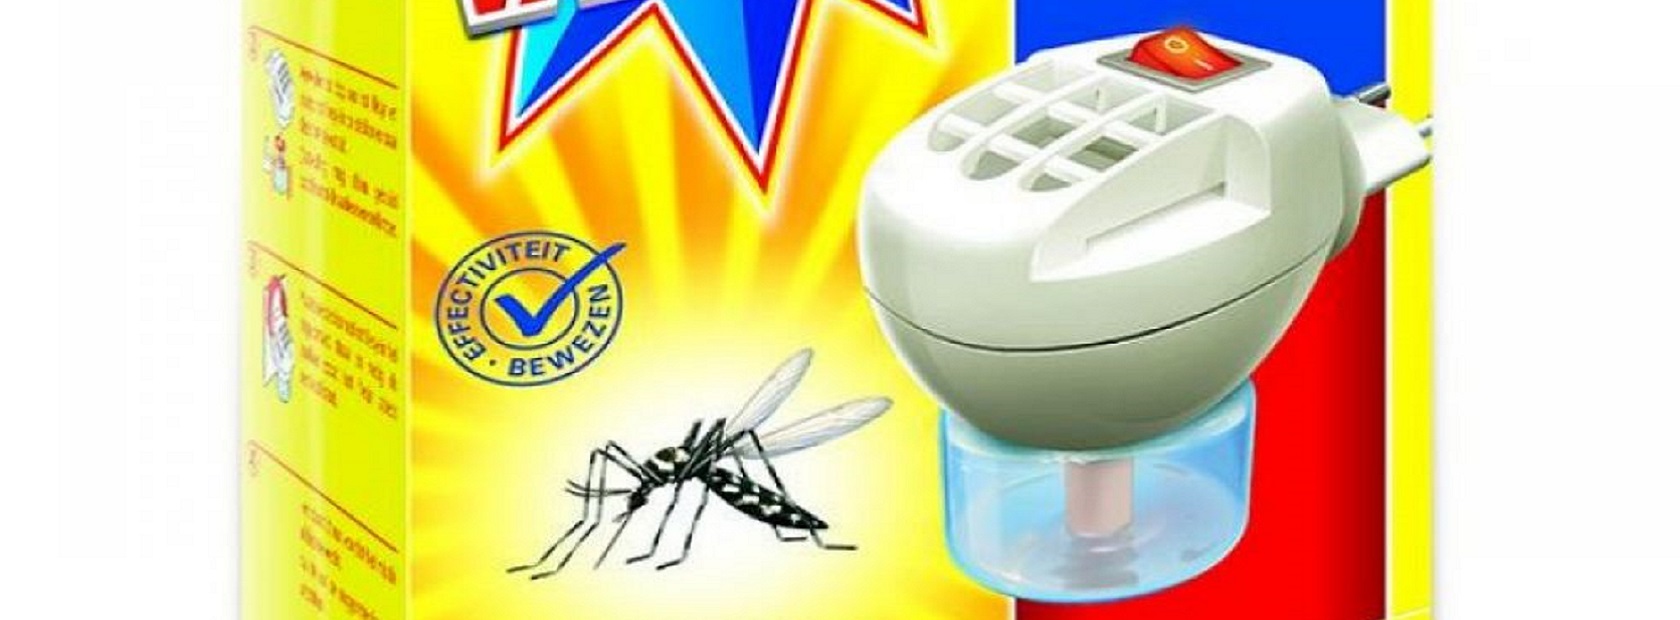 Je bekijkt nu De muggenstekker, werkt deze echt? Wij onderzochten het